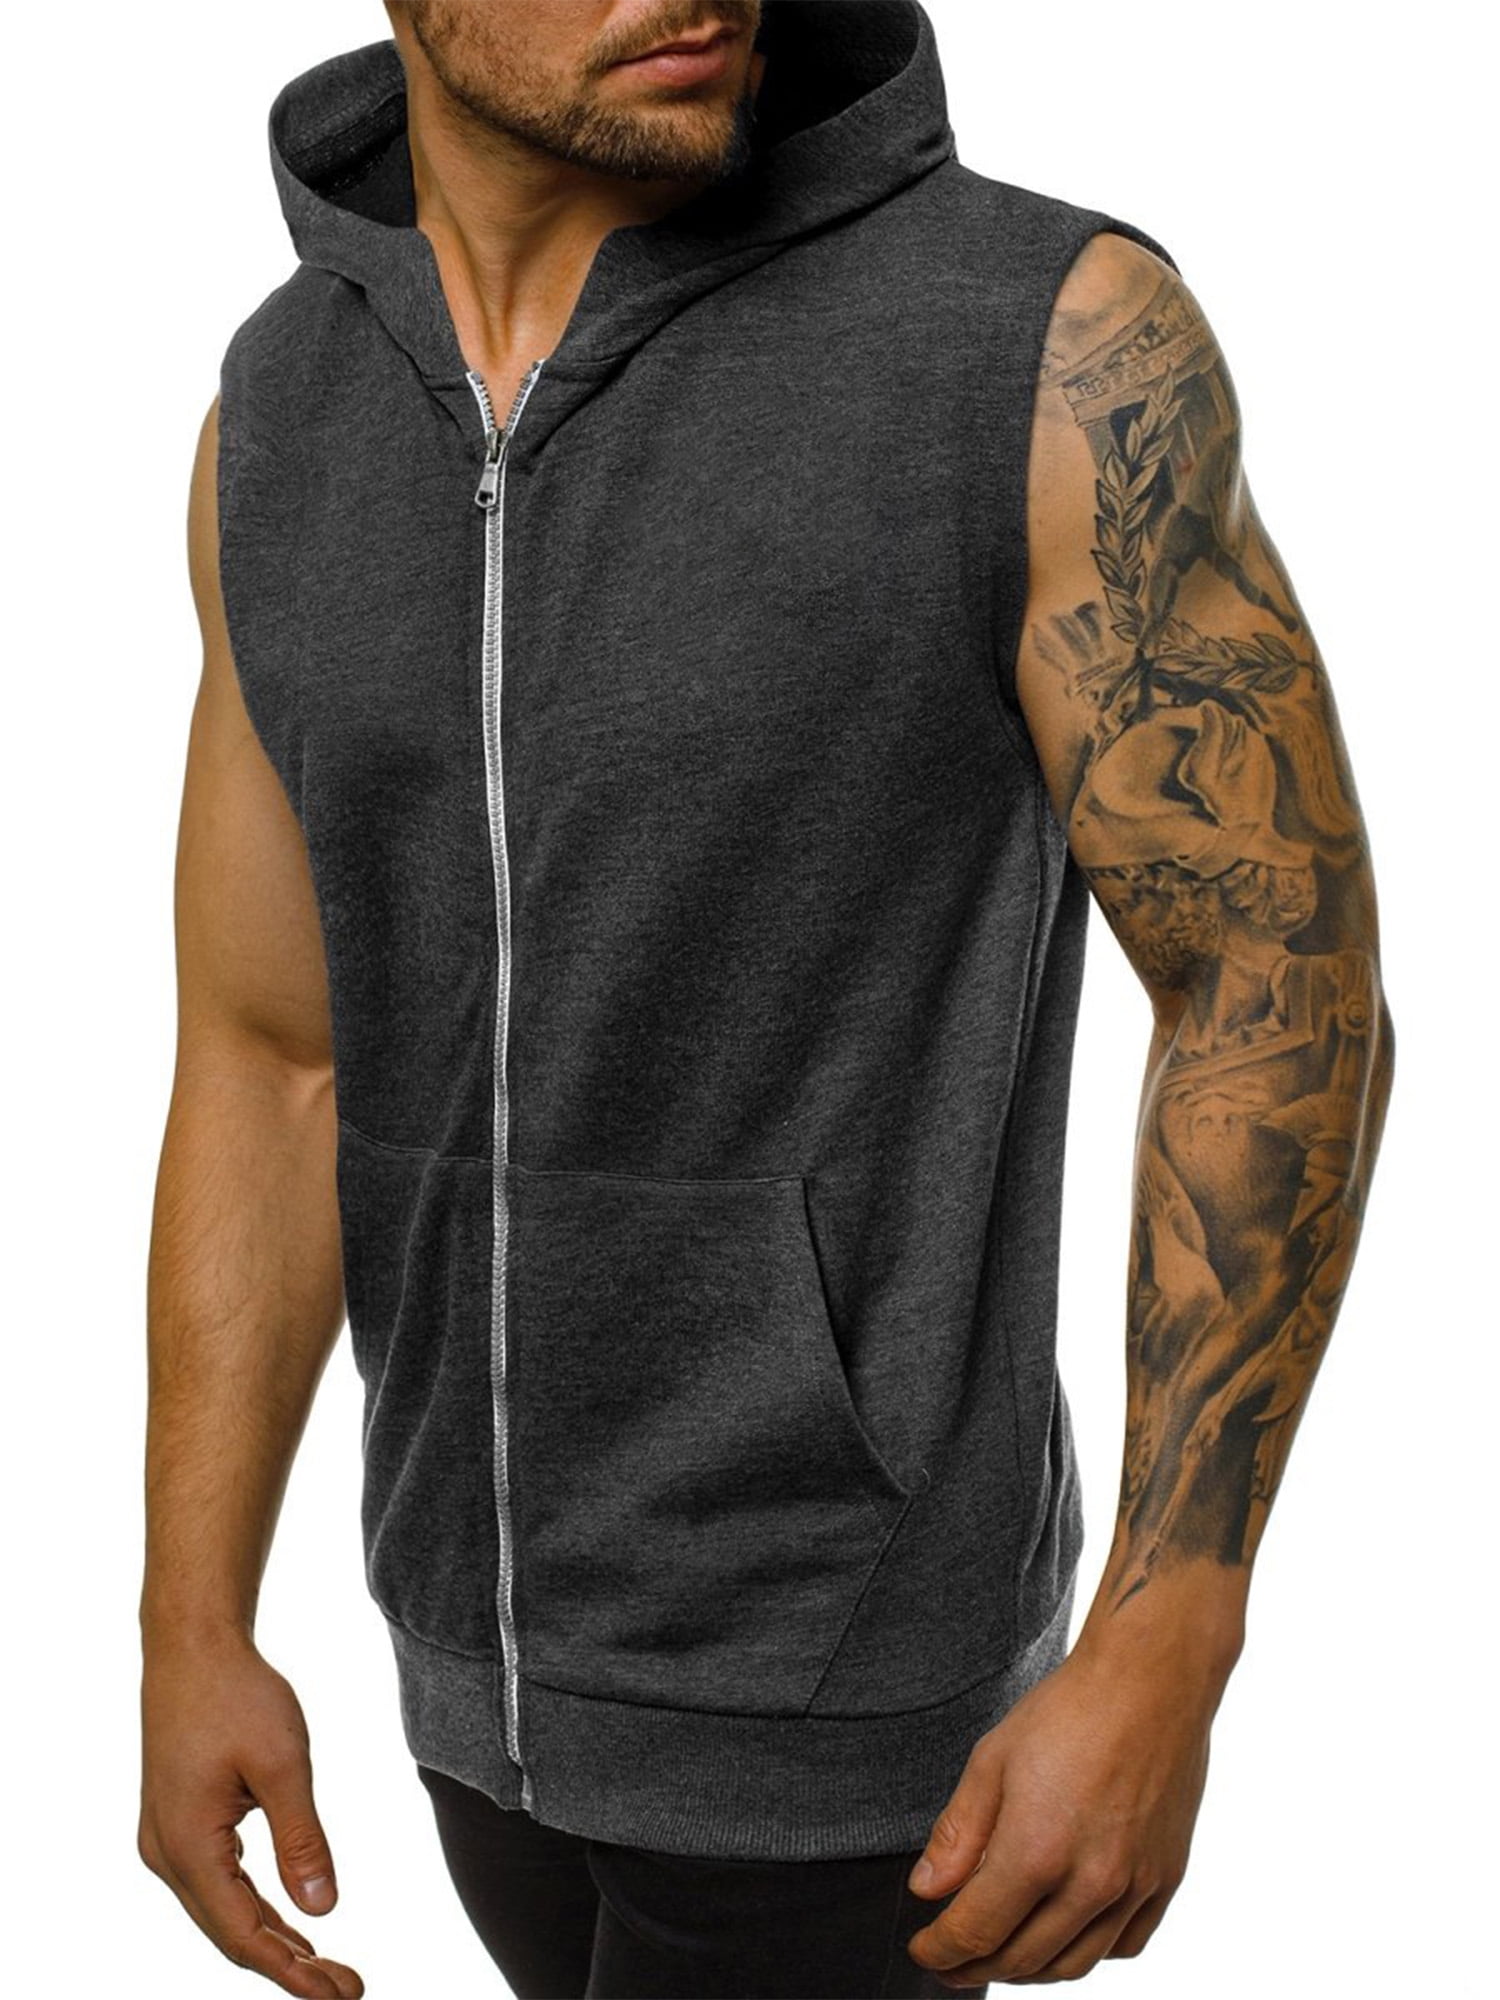 Men's Sleeveless Zipper Vest Hoodie Sports Workout Muscle Tank Tops Blouse Shirt